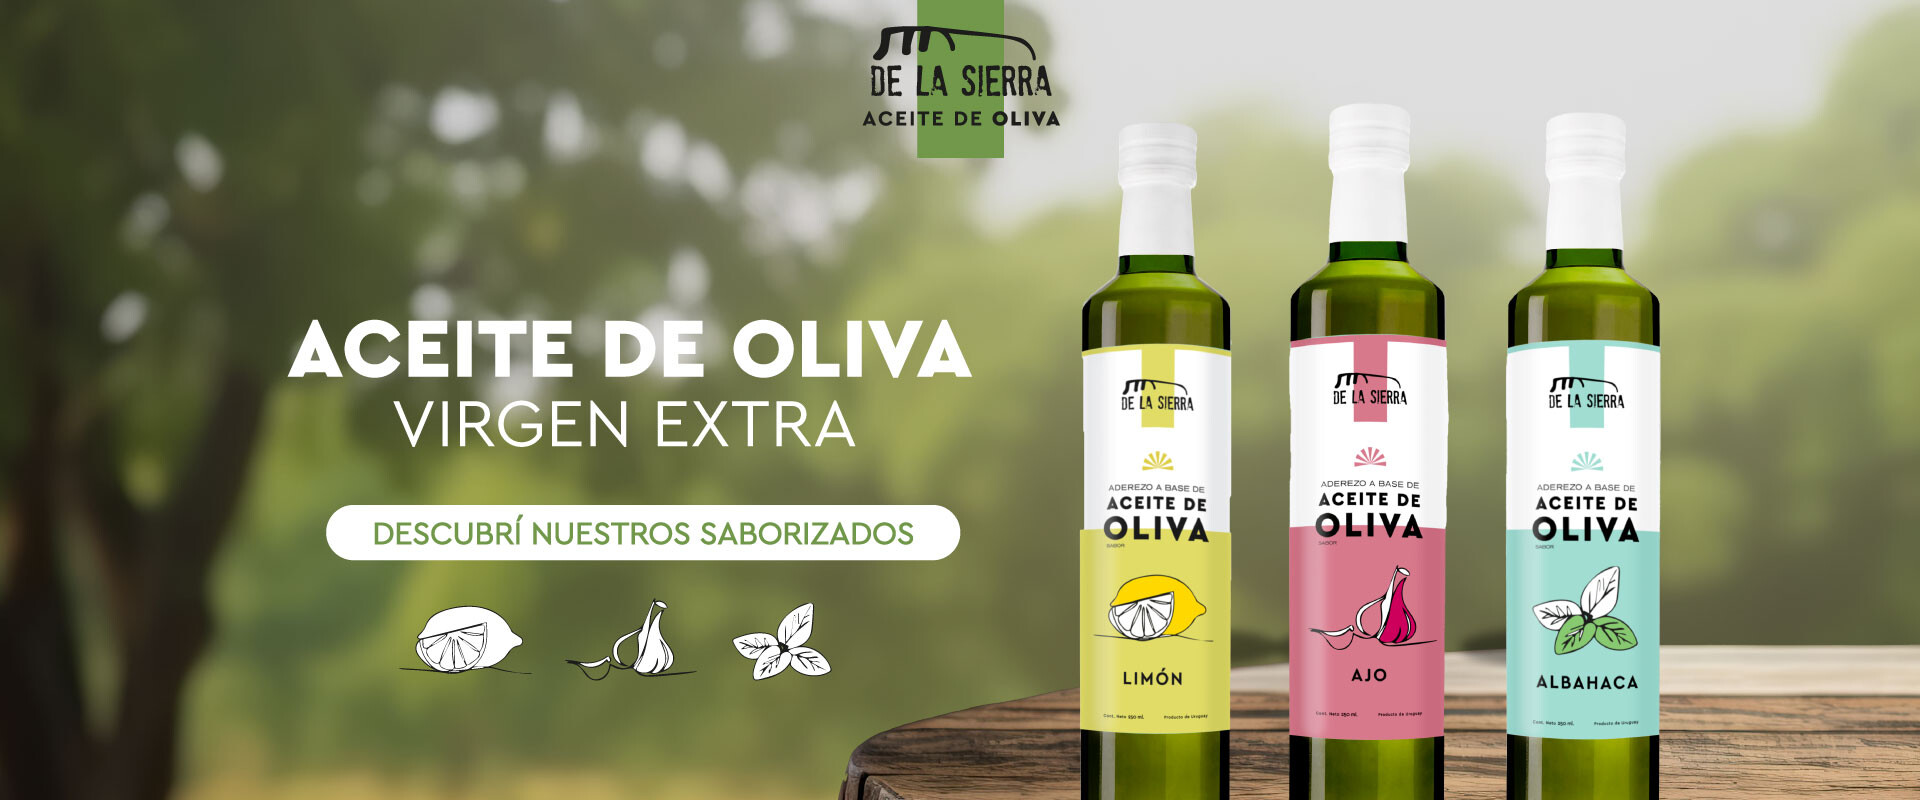 De la Sierra, Aceite de Oliva Virgen Extra. Saborizados